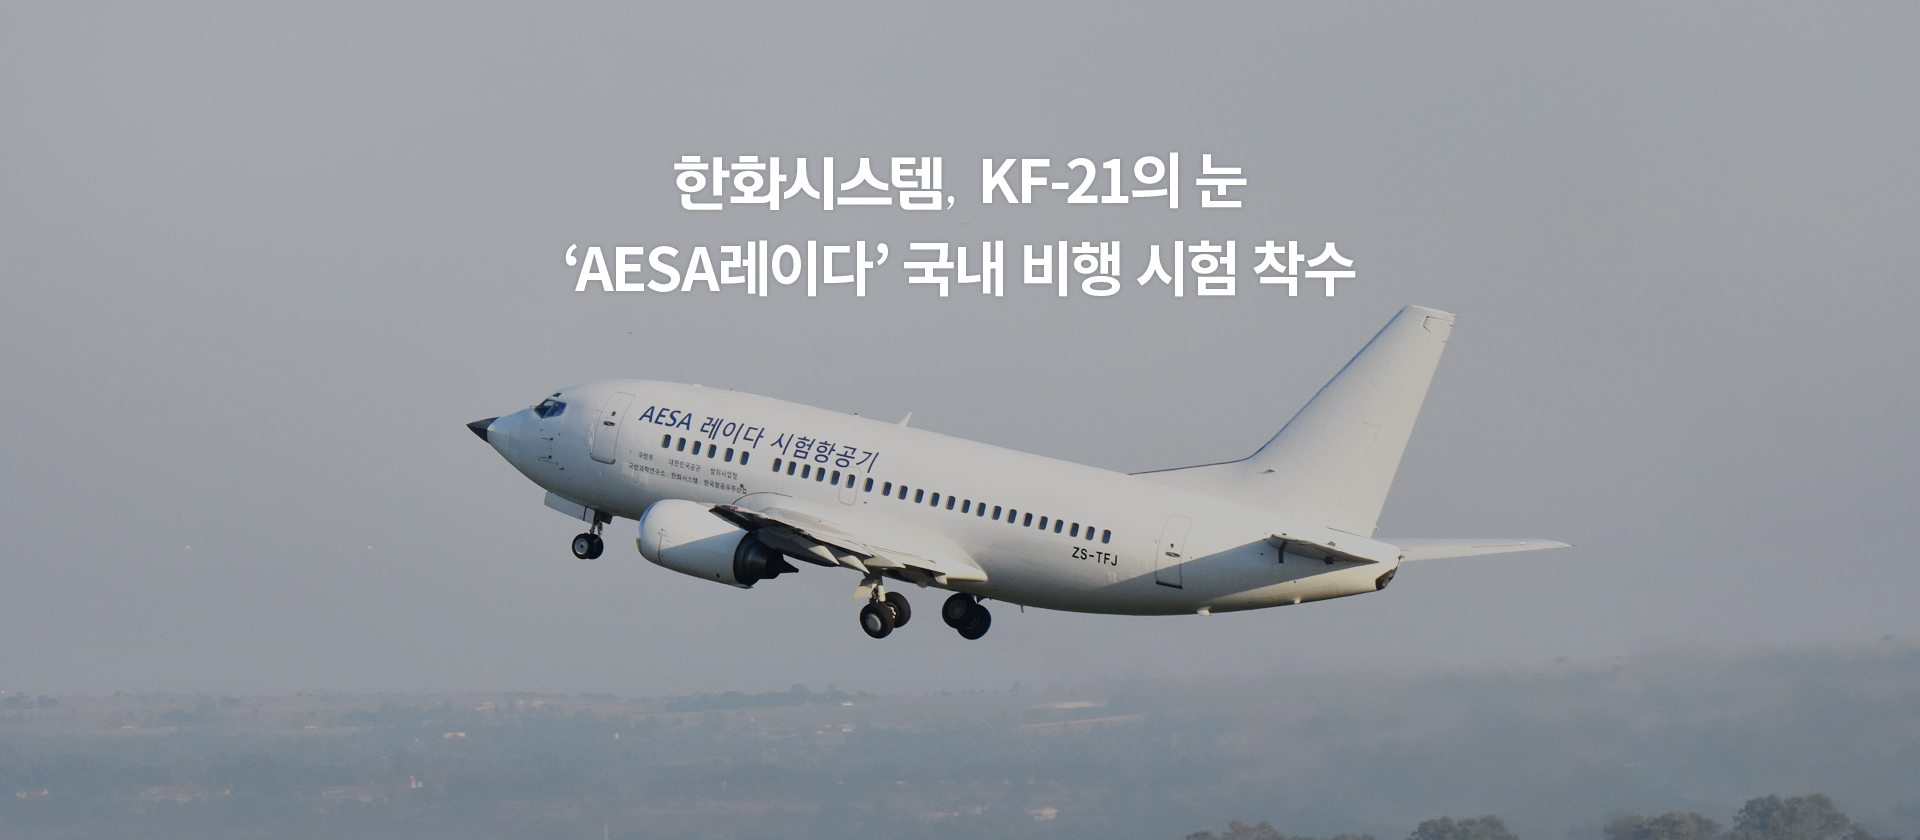 한화시스템, KF-21의 눈 ‘AESA레이다’ 국내 비행 시험 착수